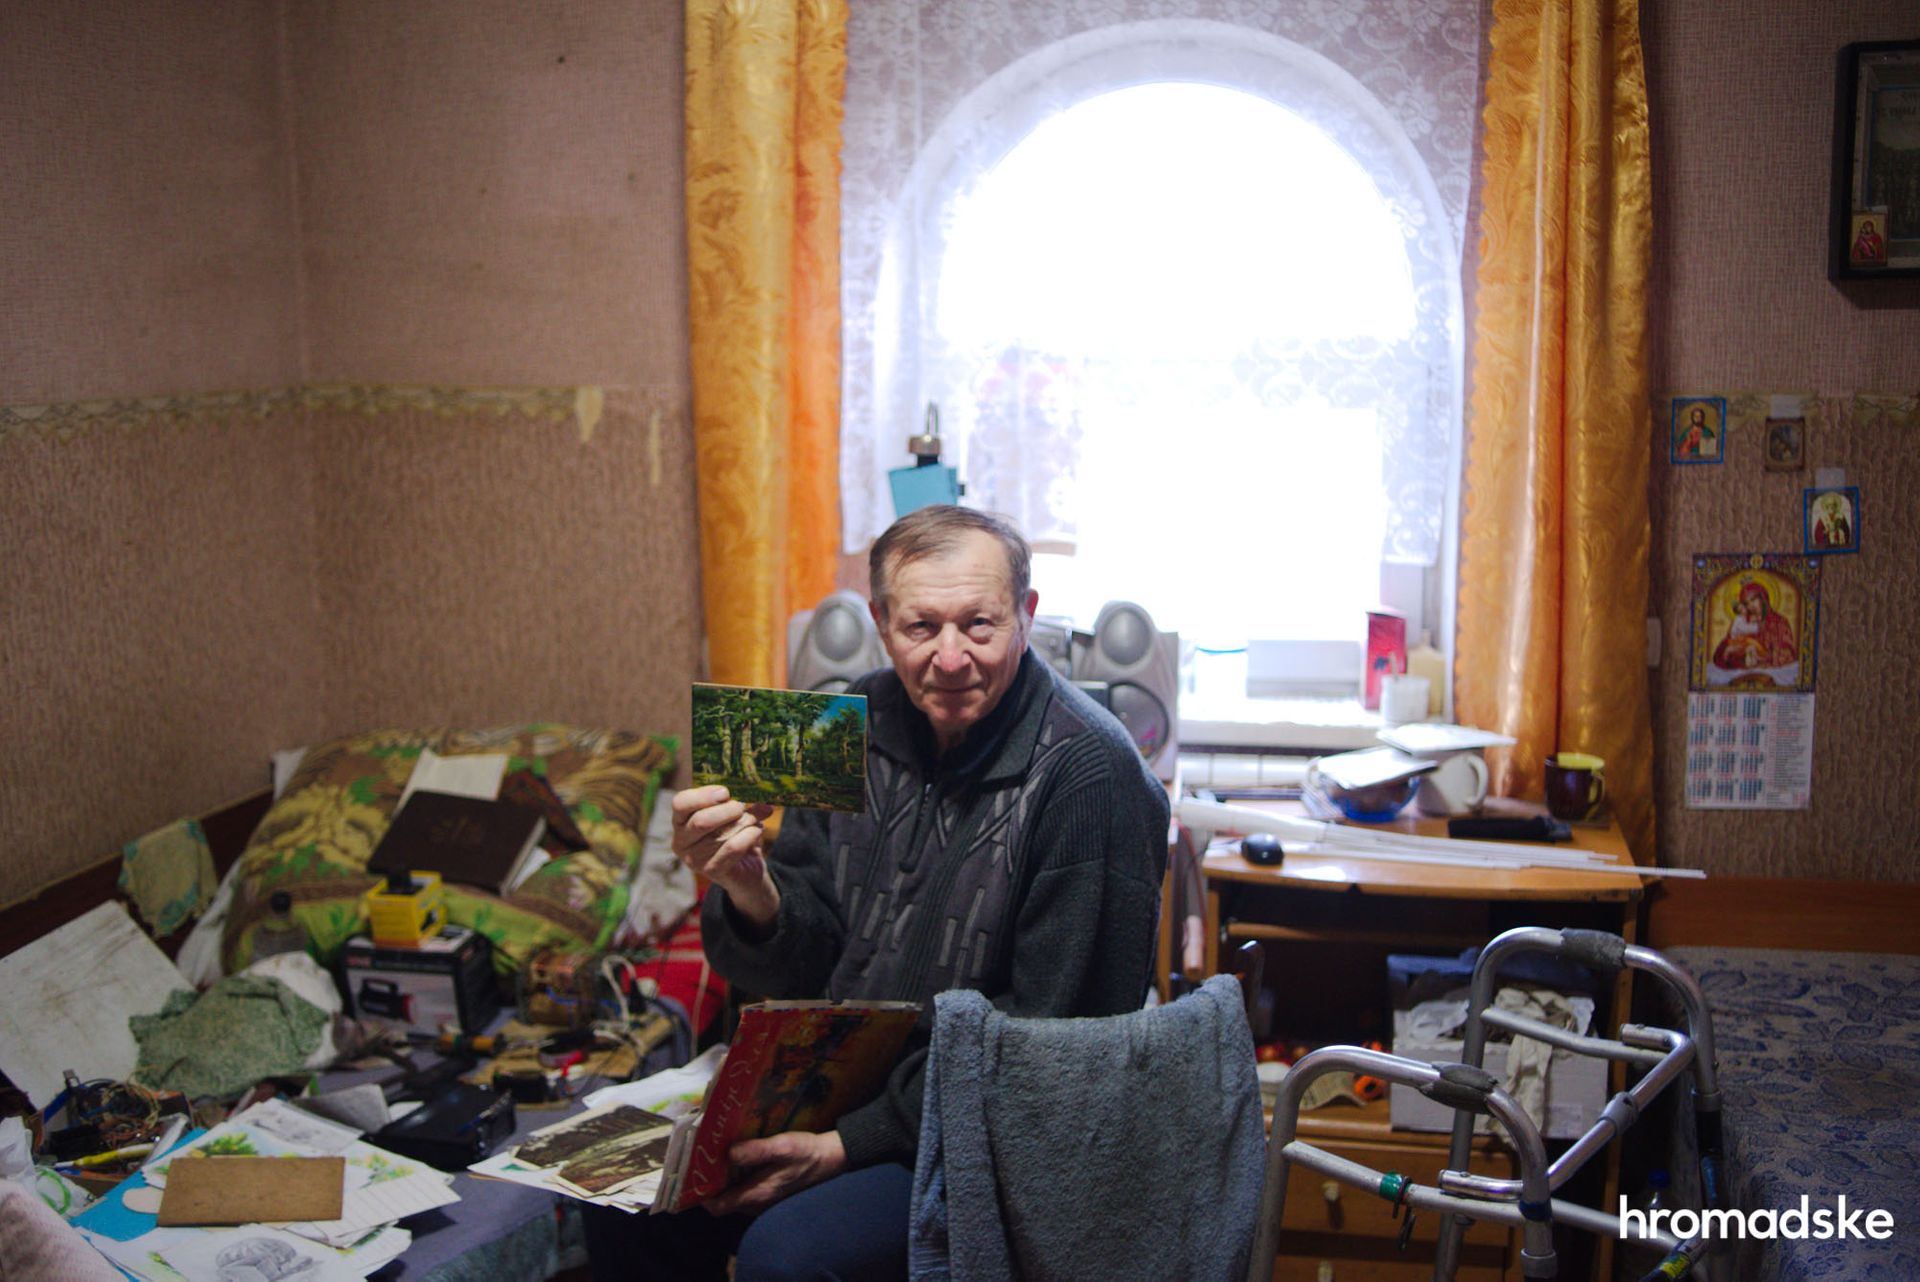 Александр Карих, 70 лет, показывает свои рисунки, нарисованные в Доме милосердия. Фото: Макс Левин/hromadske